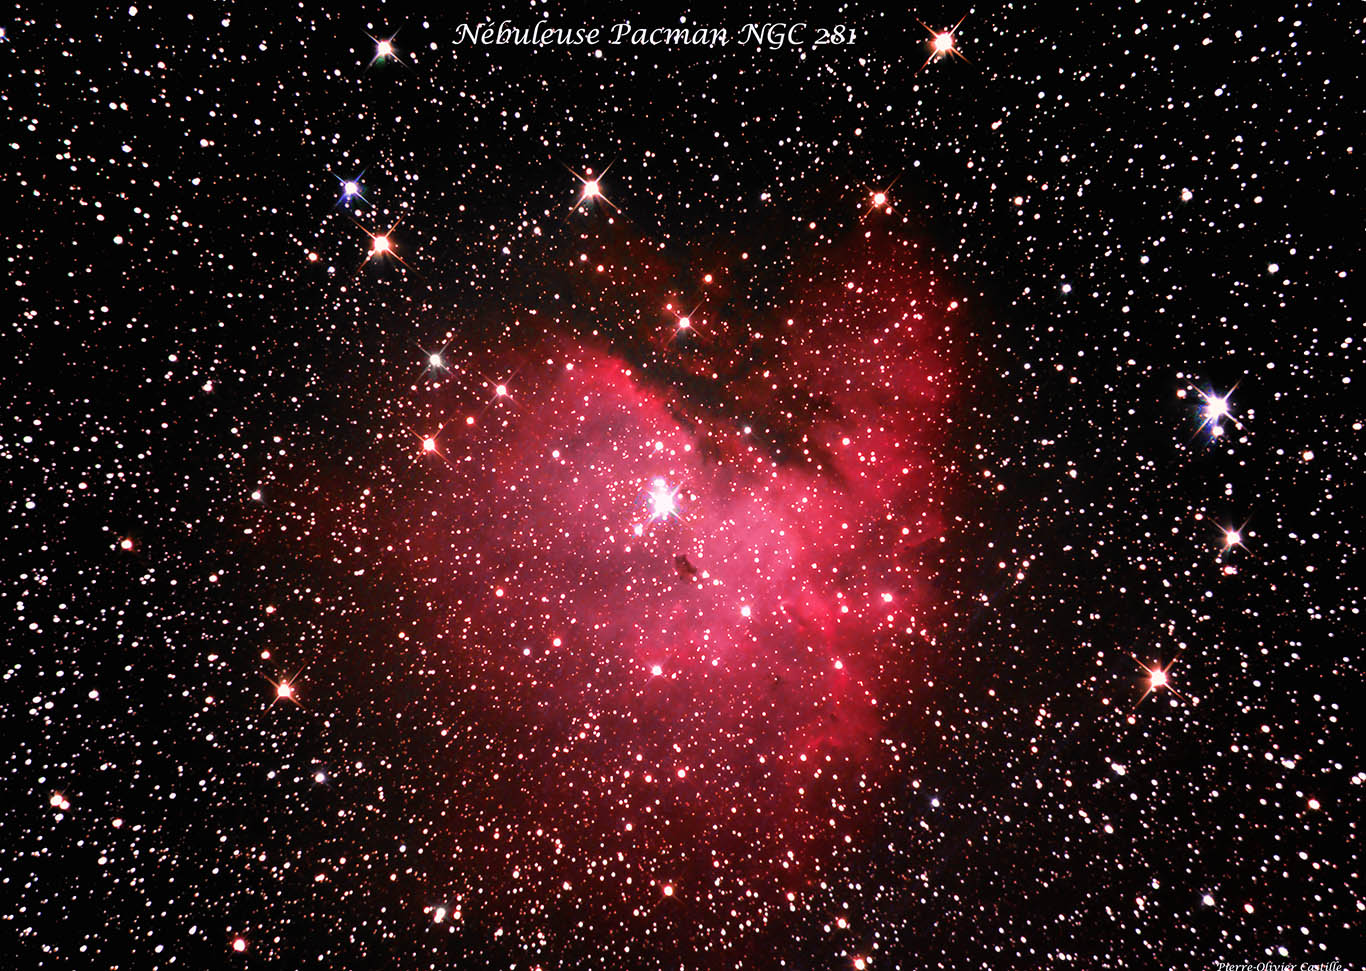 NGC 281 Nébuleuse Pacman